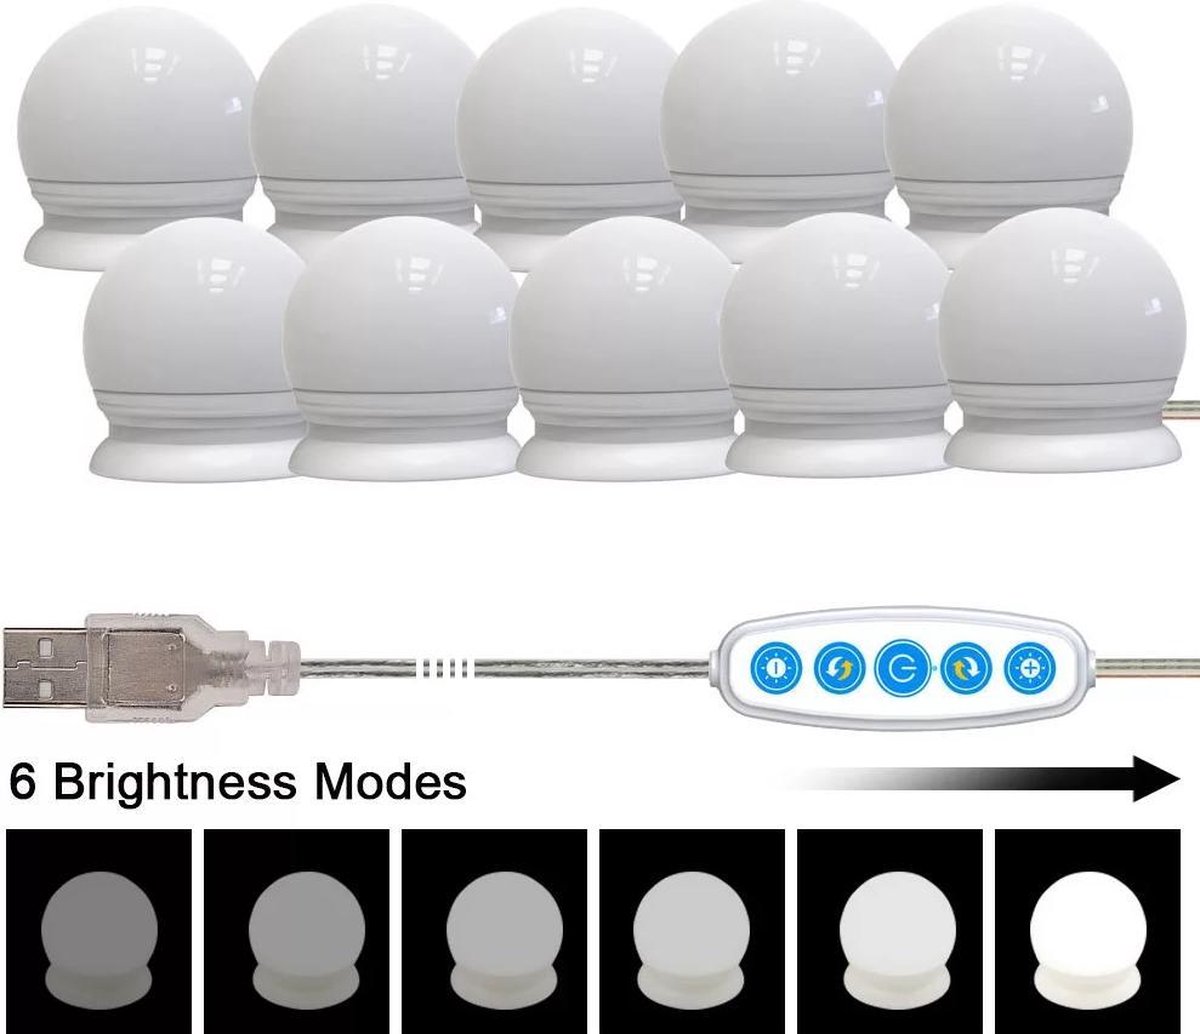 Lampe de Miroir LED Style Hollywood 10 Ampoules, Câbles parfaitement  Cachés, 3 Couleurs et 10 Intensités, Lumière Miroir USB pour Coiffeuse  Maquillage, Boule LED Coiffeuse Adhesif pour Makeup [Classe